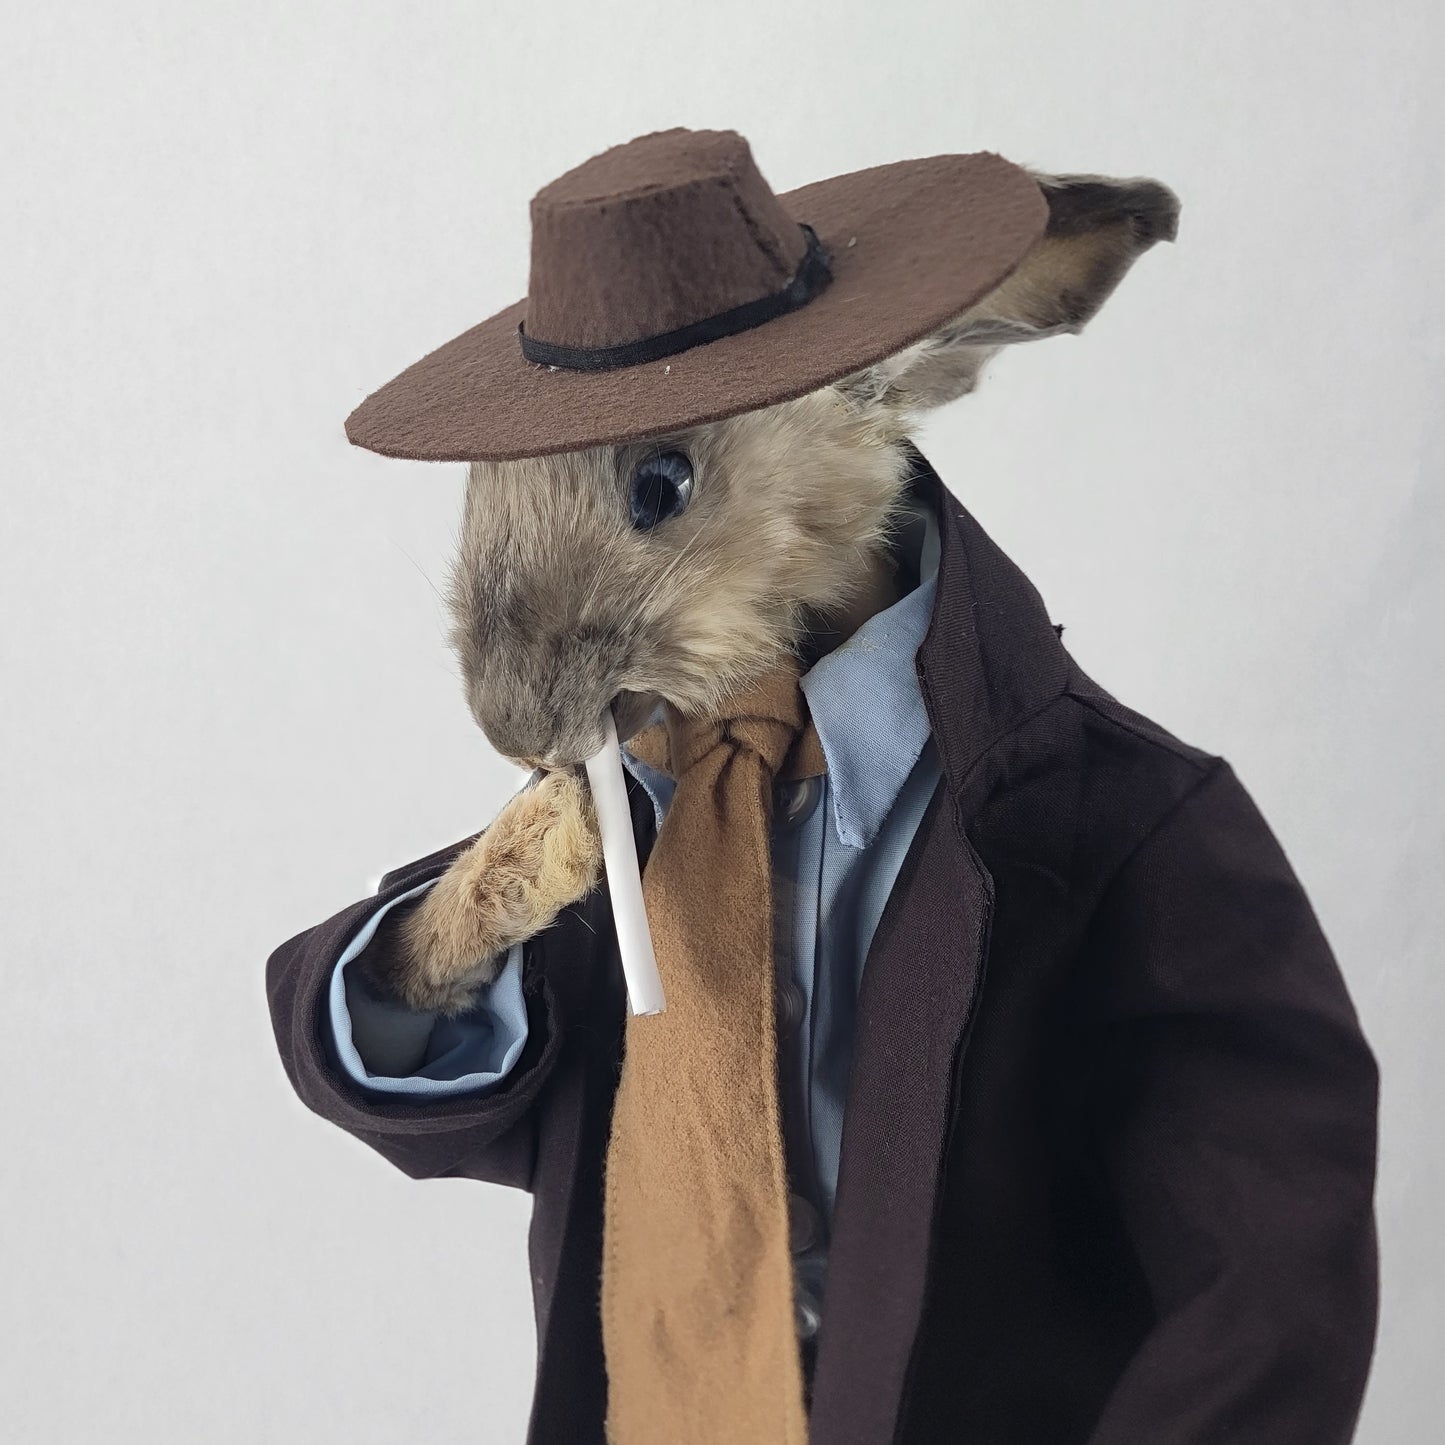 J. Rabbit Hoppenheimer